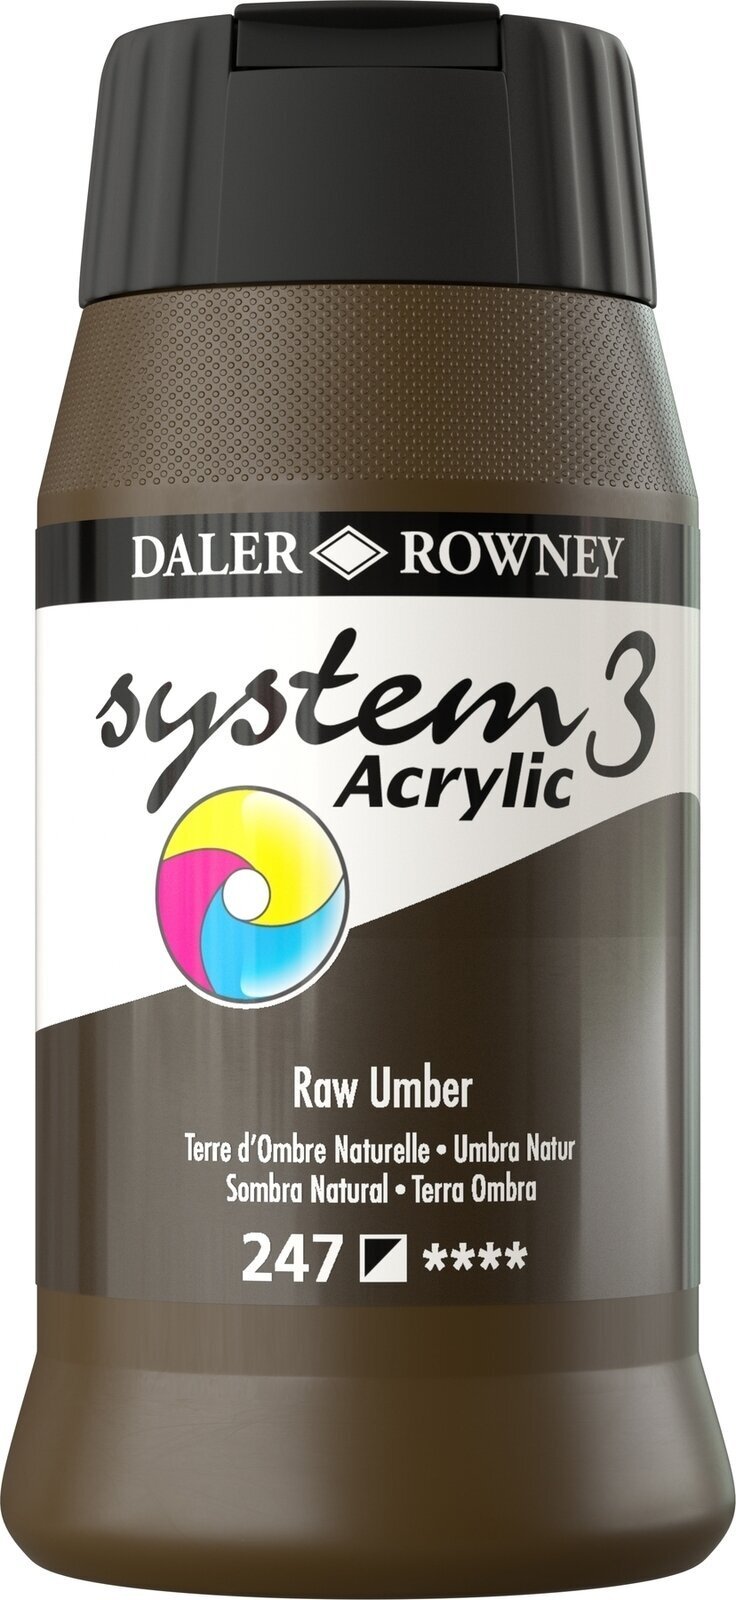 Akrylová barva Daler Rowney System3 Akrylová barva Raw Umber 500 ml 1 ks